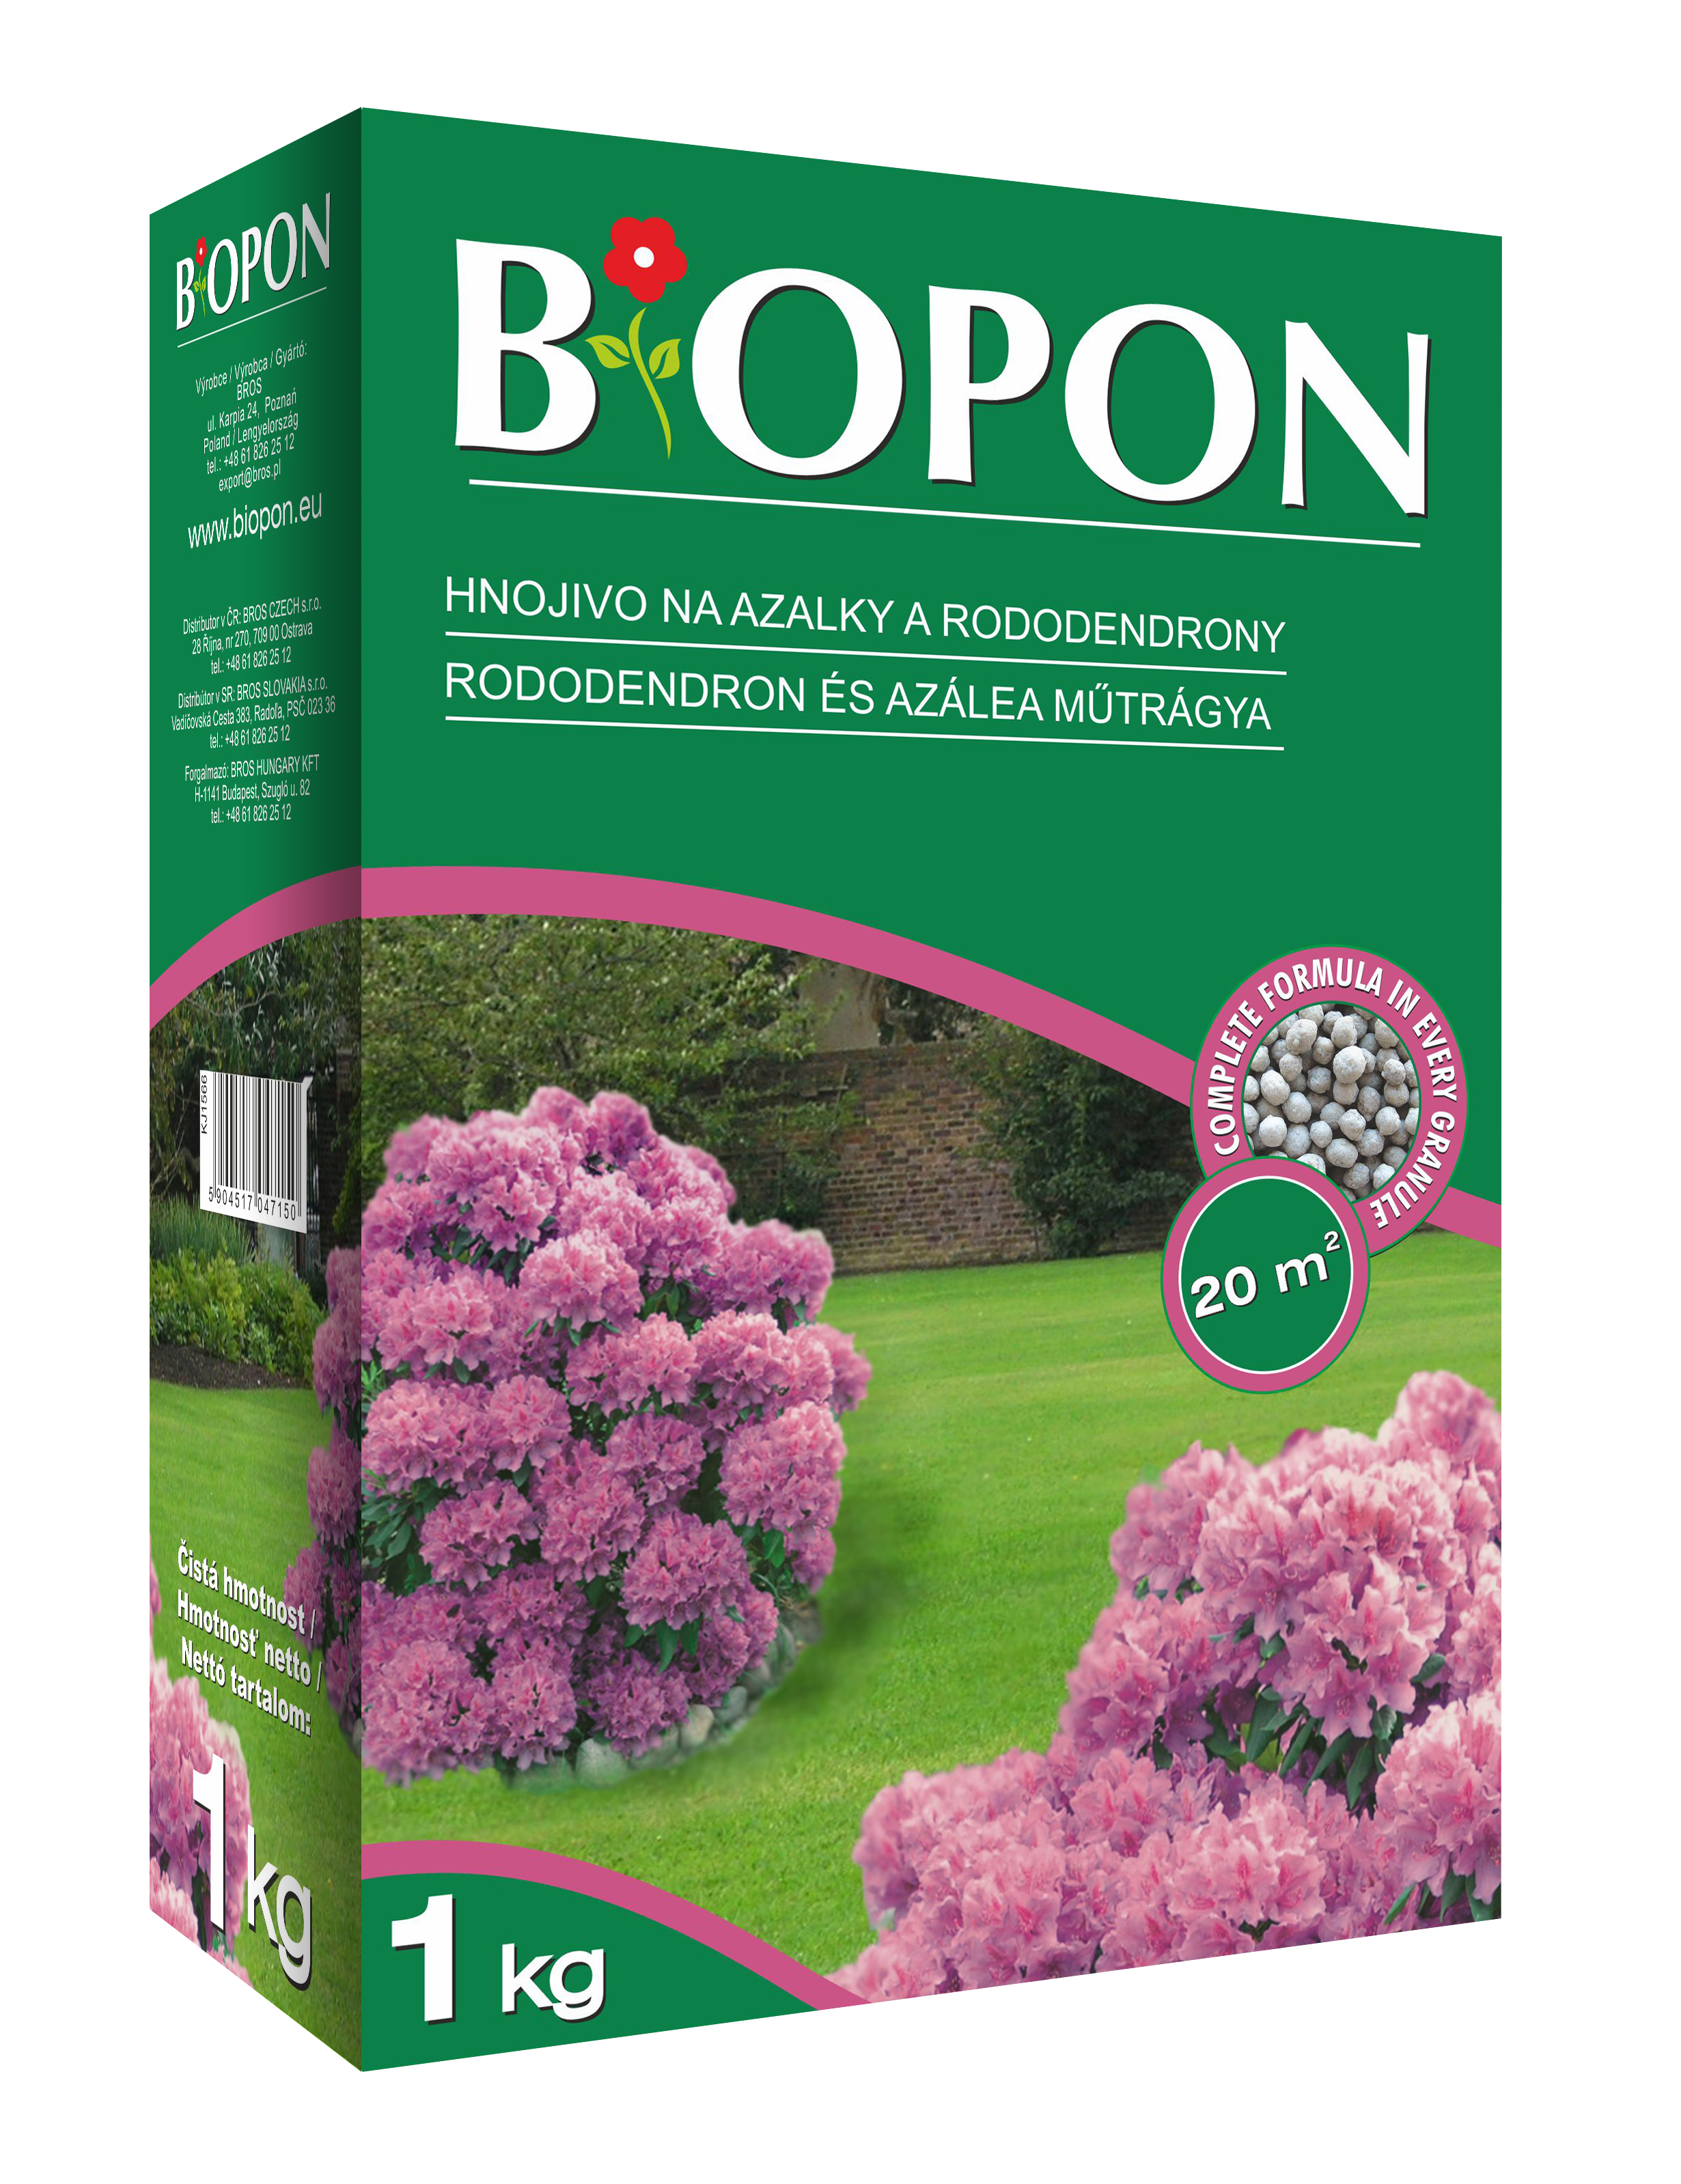 Biopon îngrășământ pentru rododendron 1 kg